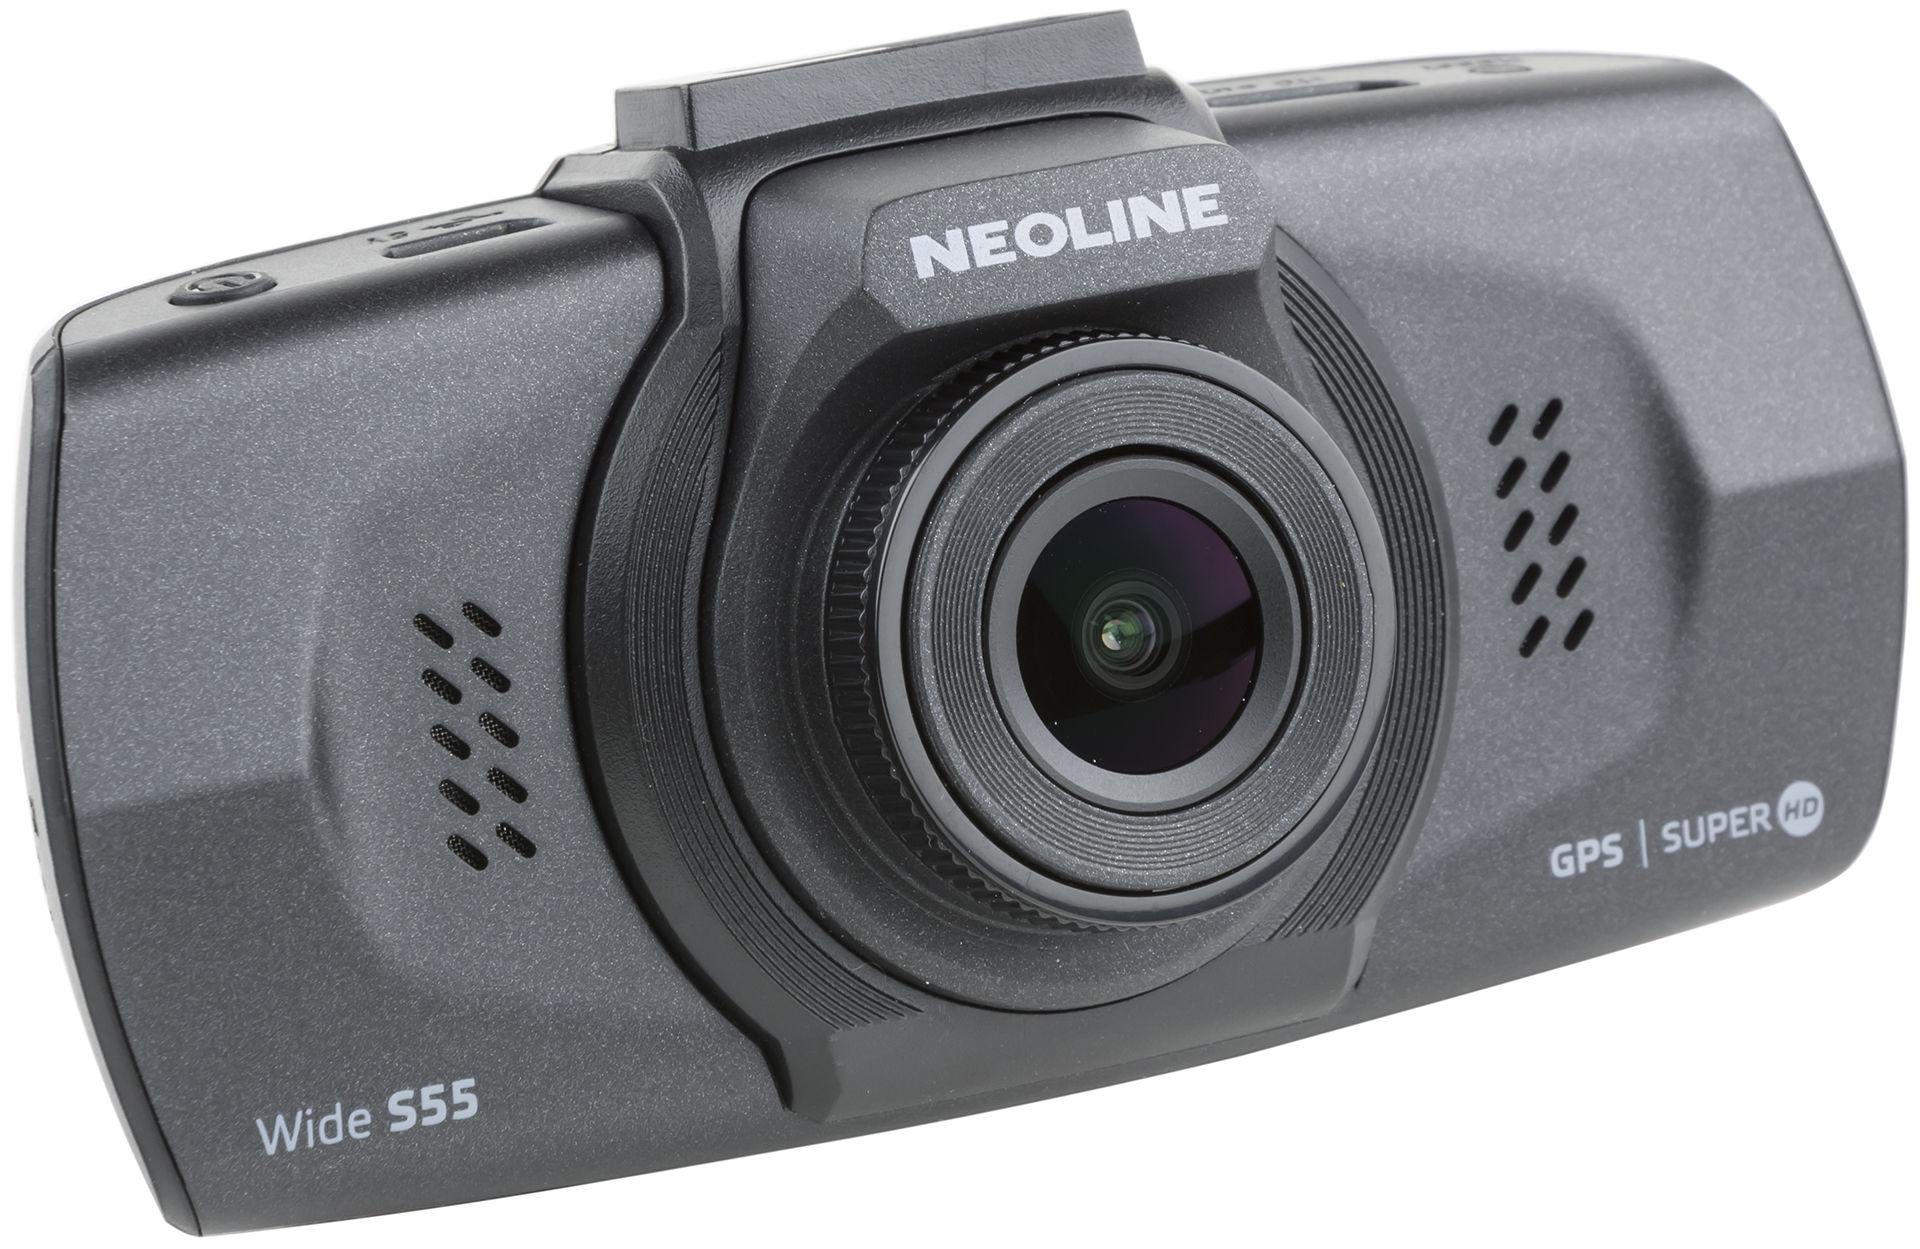 Свидетель на лобовом стекле – обзор видеорегистратора Neoline Wide S55